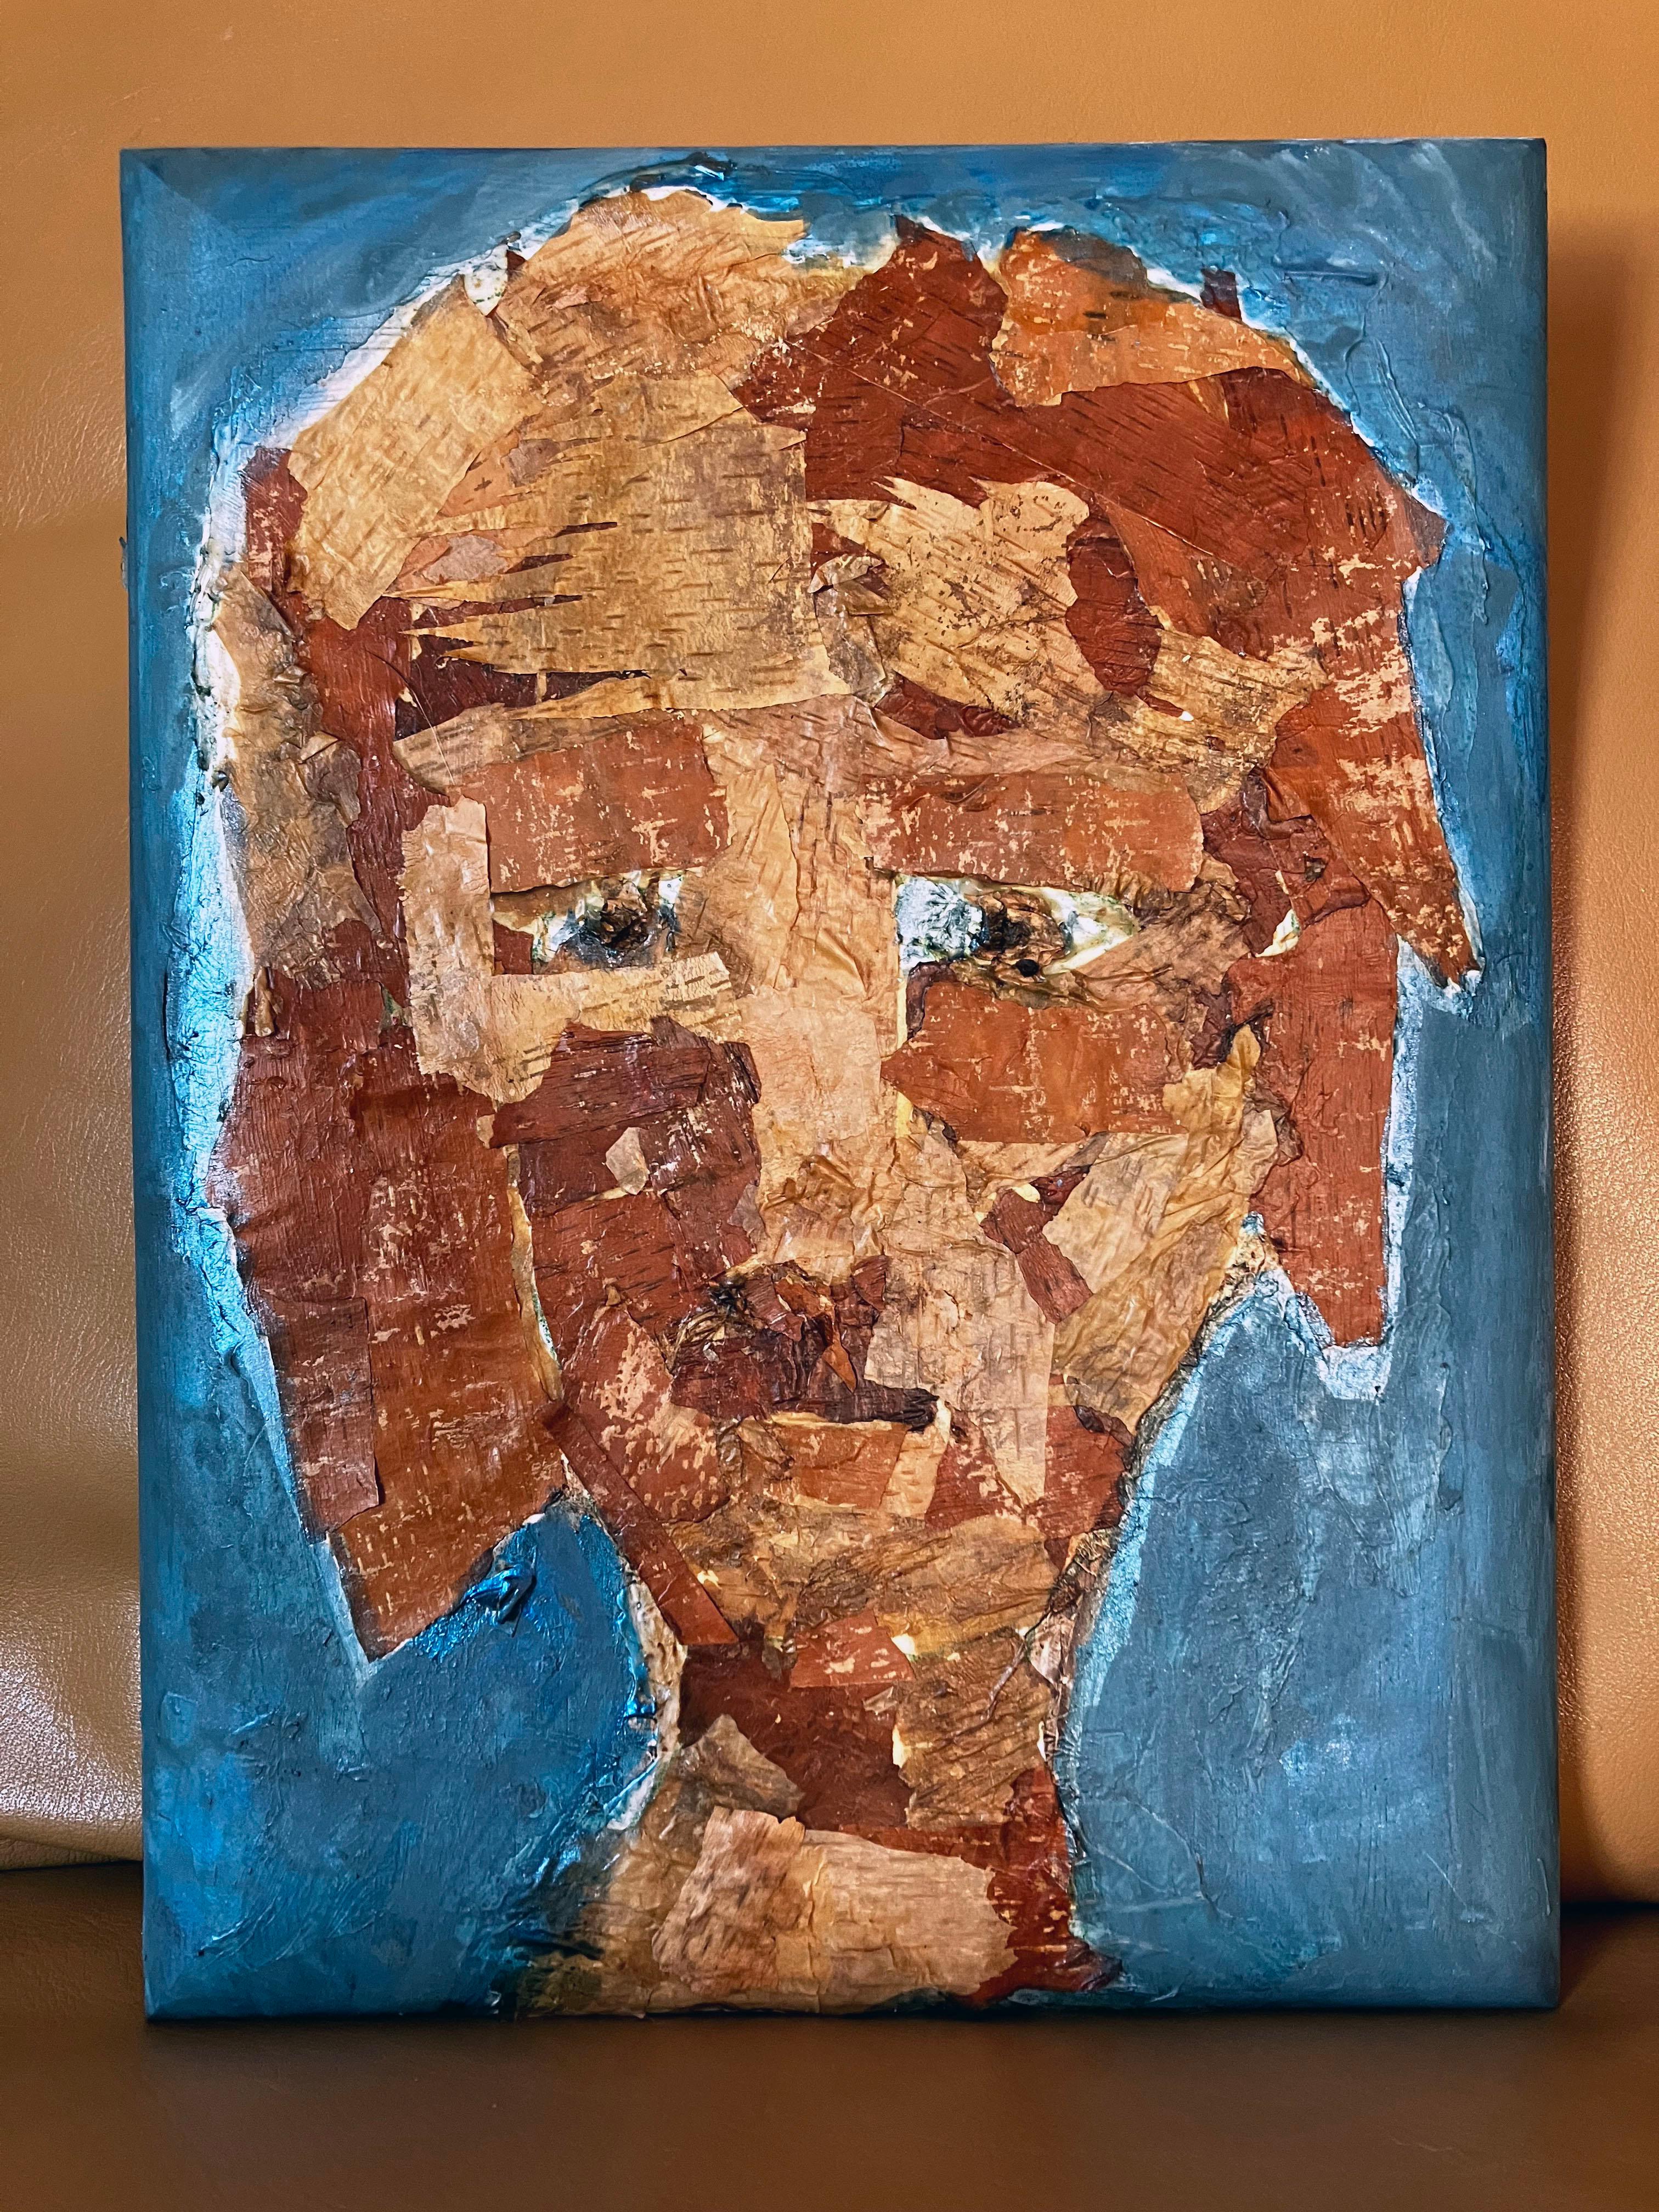 Face humaine bleue et terreuse 1000 ans, écorce d'arbre de bouleau, élément naturel - Painting de C. Dimitri